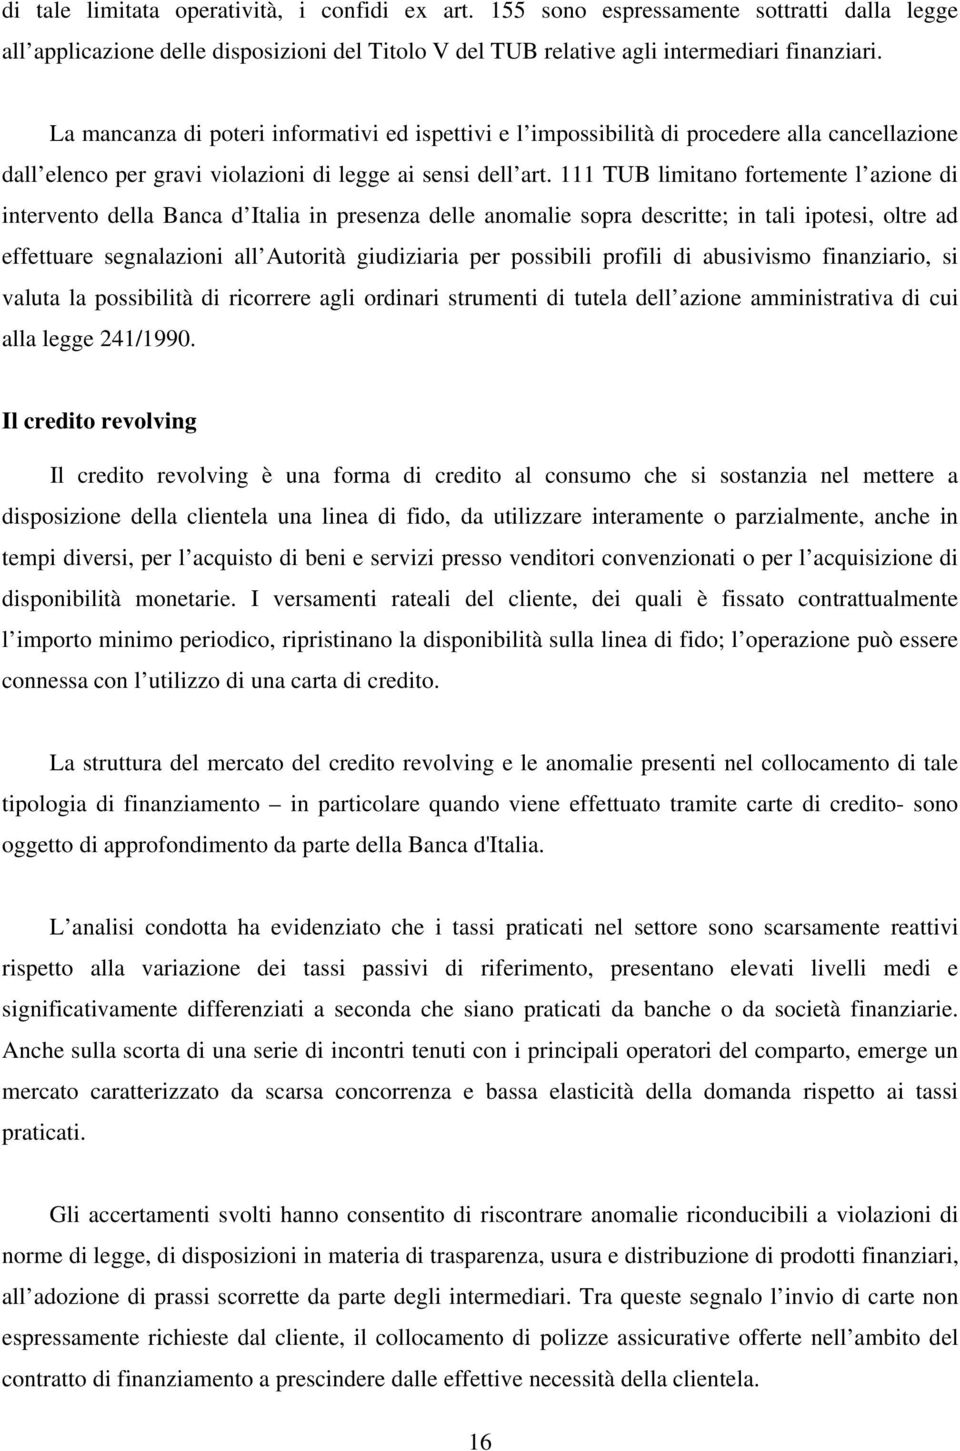 111 TUB limitano fortemente l azione di intervento della Banca d Italia in presenza delle anomalie sopra descritte; in tali ipotesi, oltre ad effettuare segnalazioni all Autorità giudiziaria per